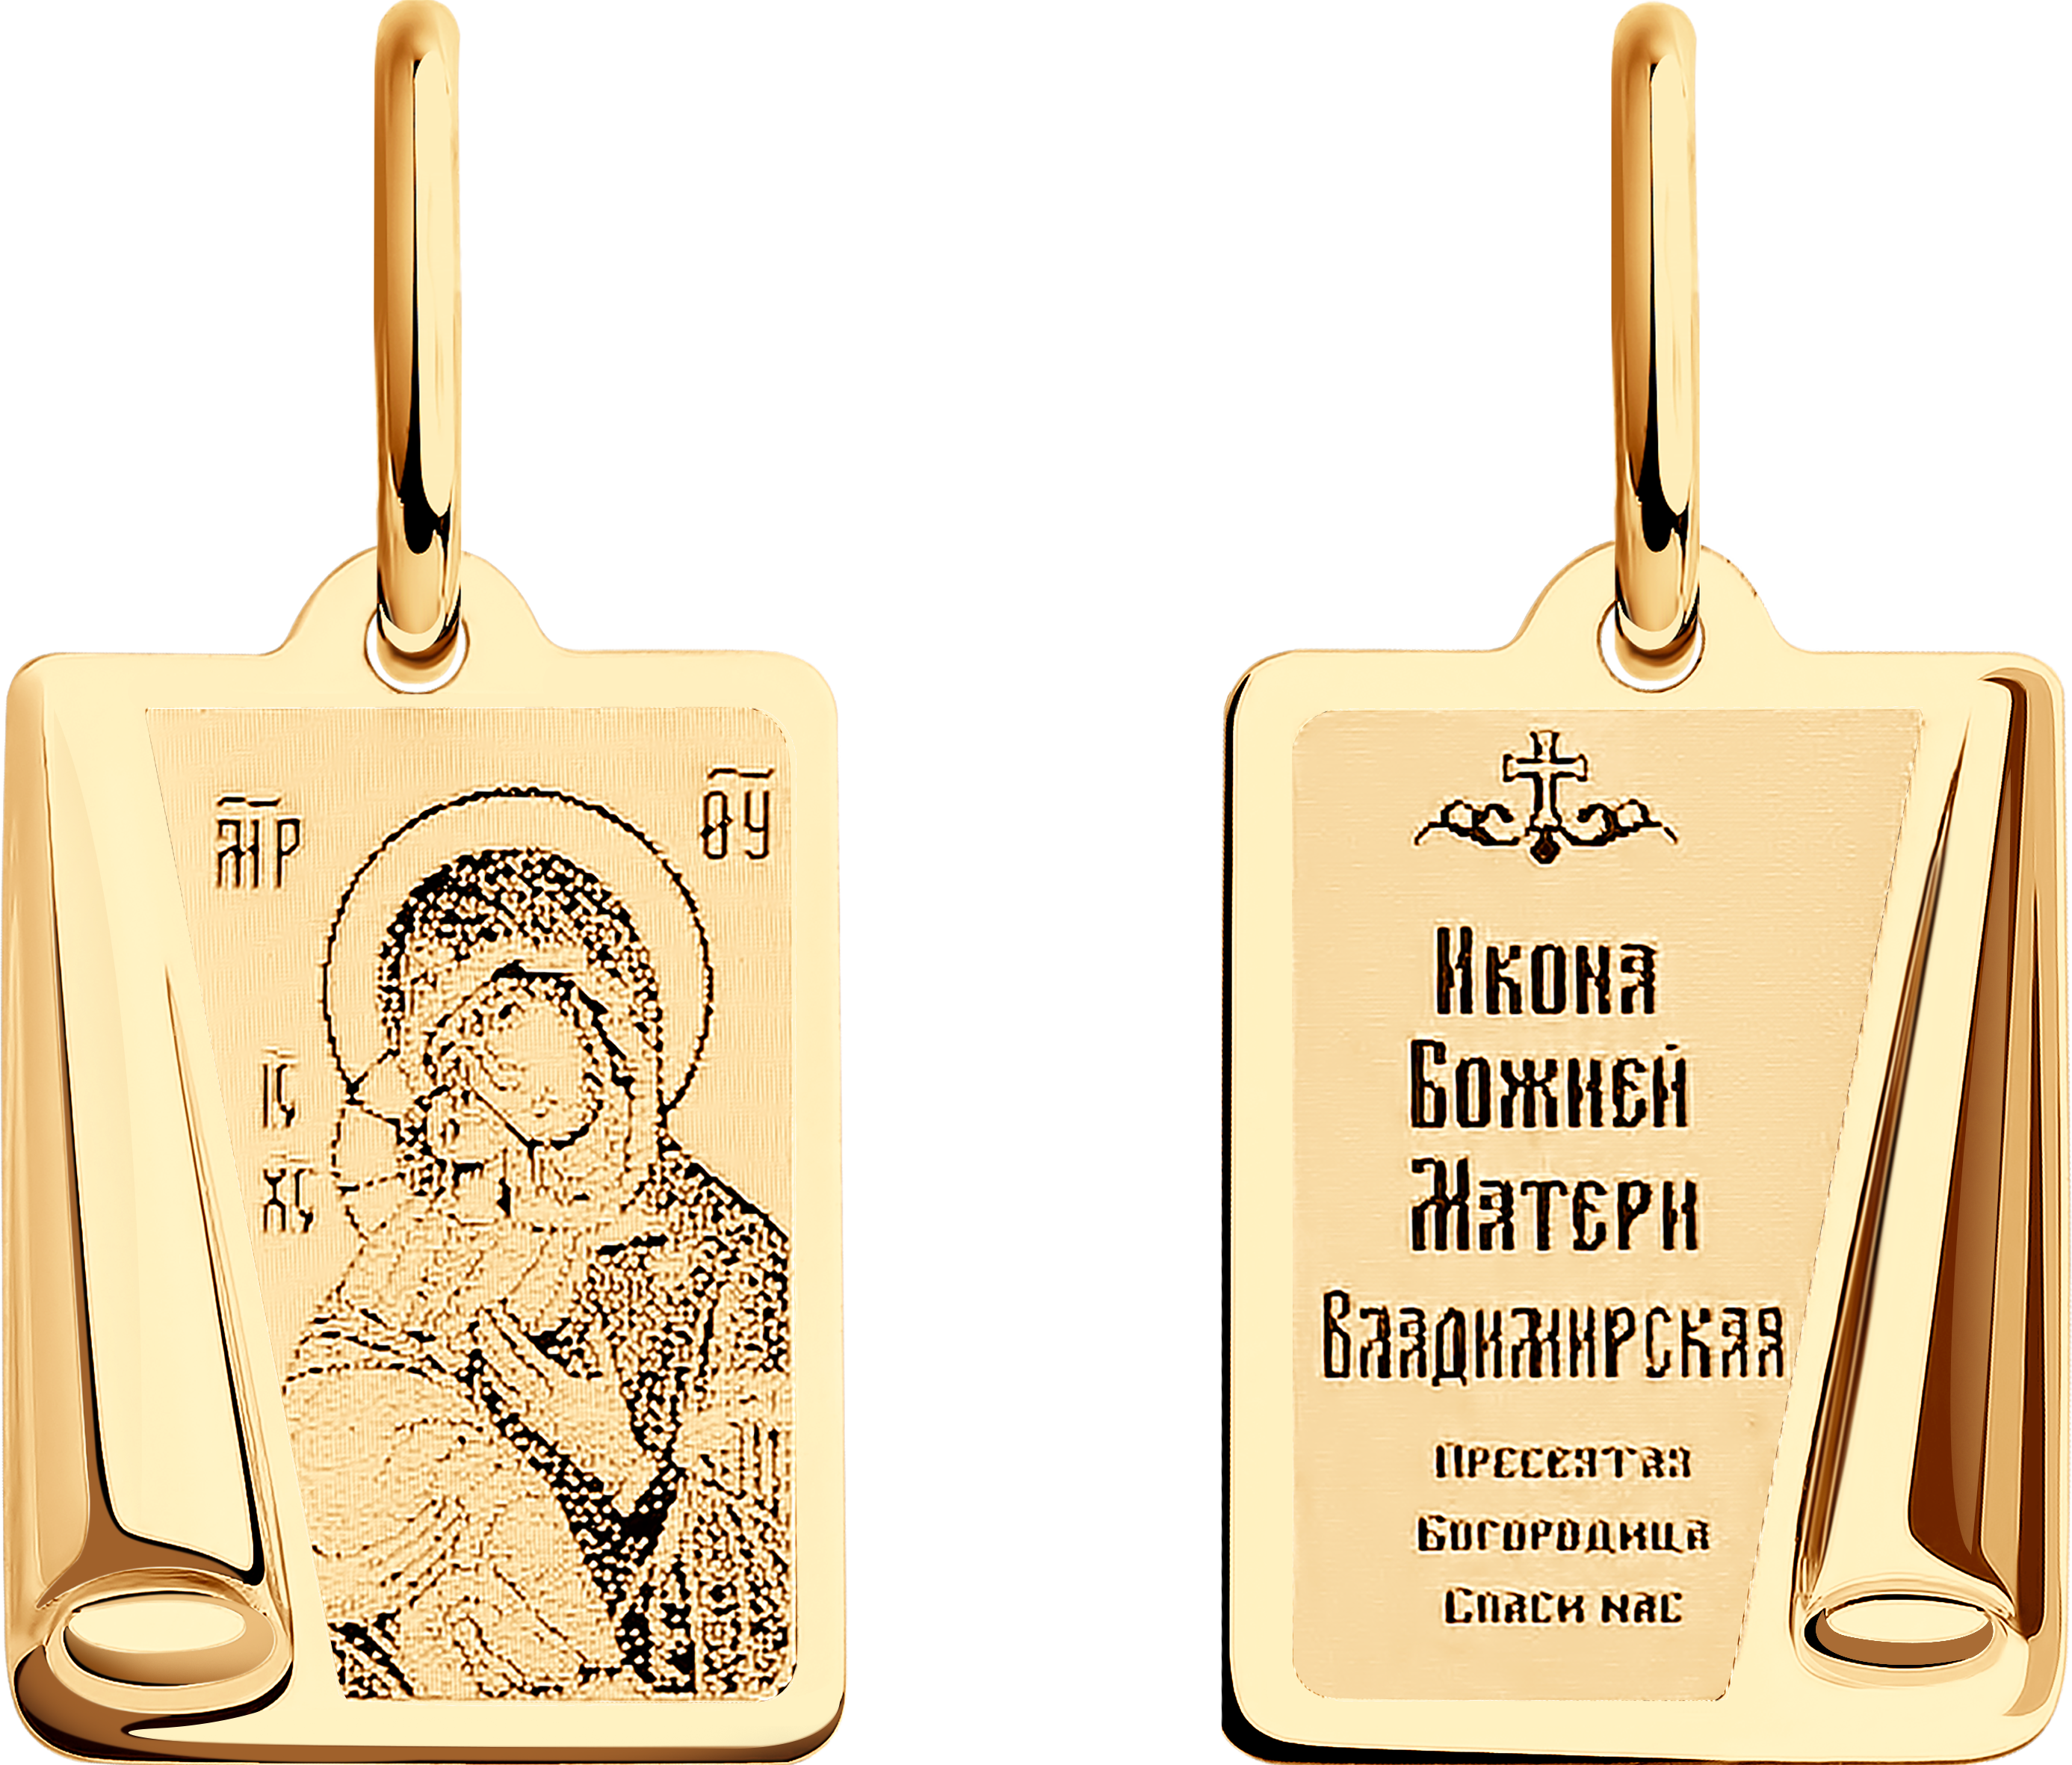 Иконка SOKOLOV из золота с ликом «Владимирской Божьей Матери»